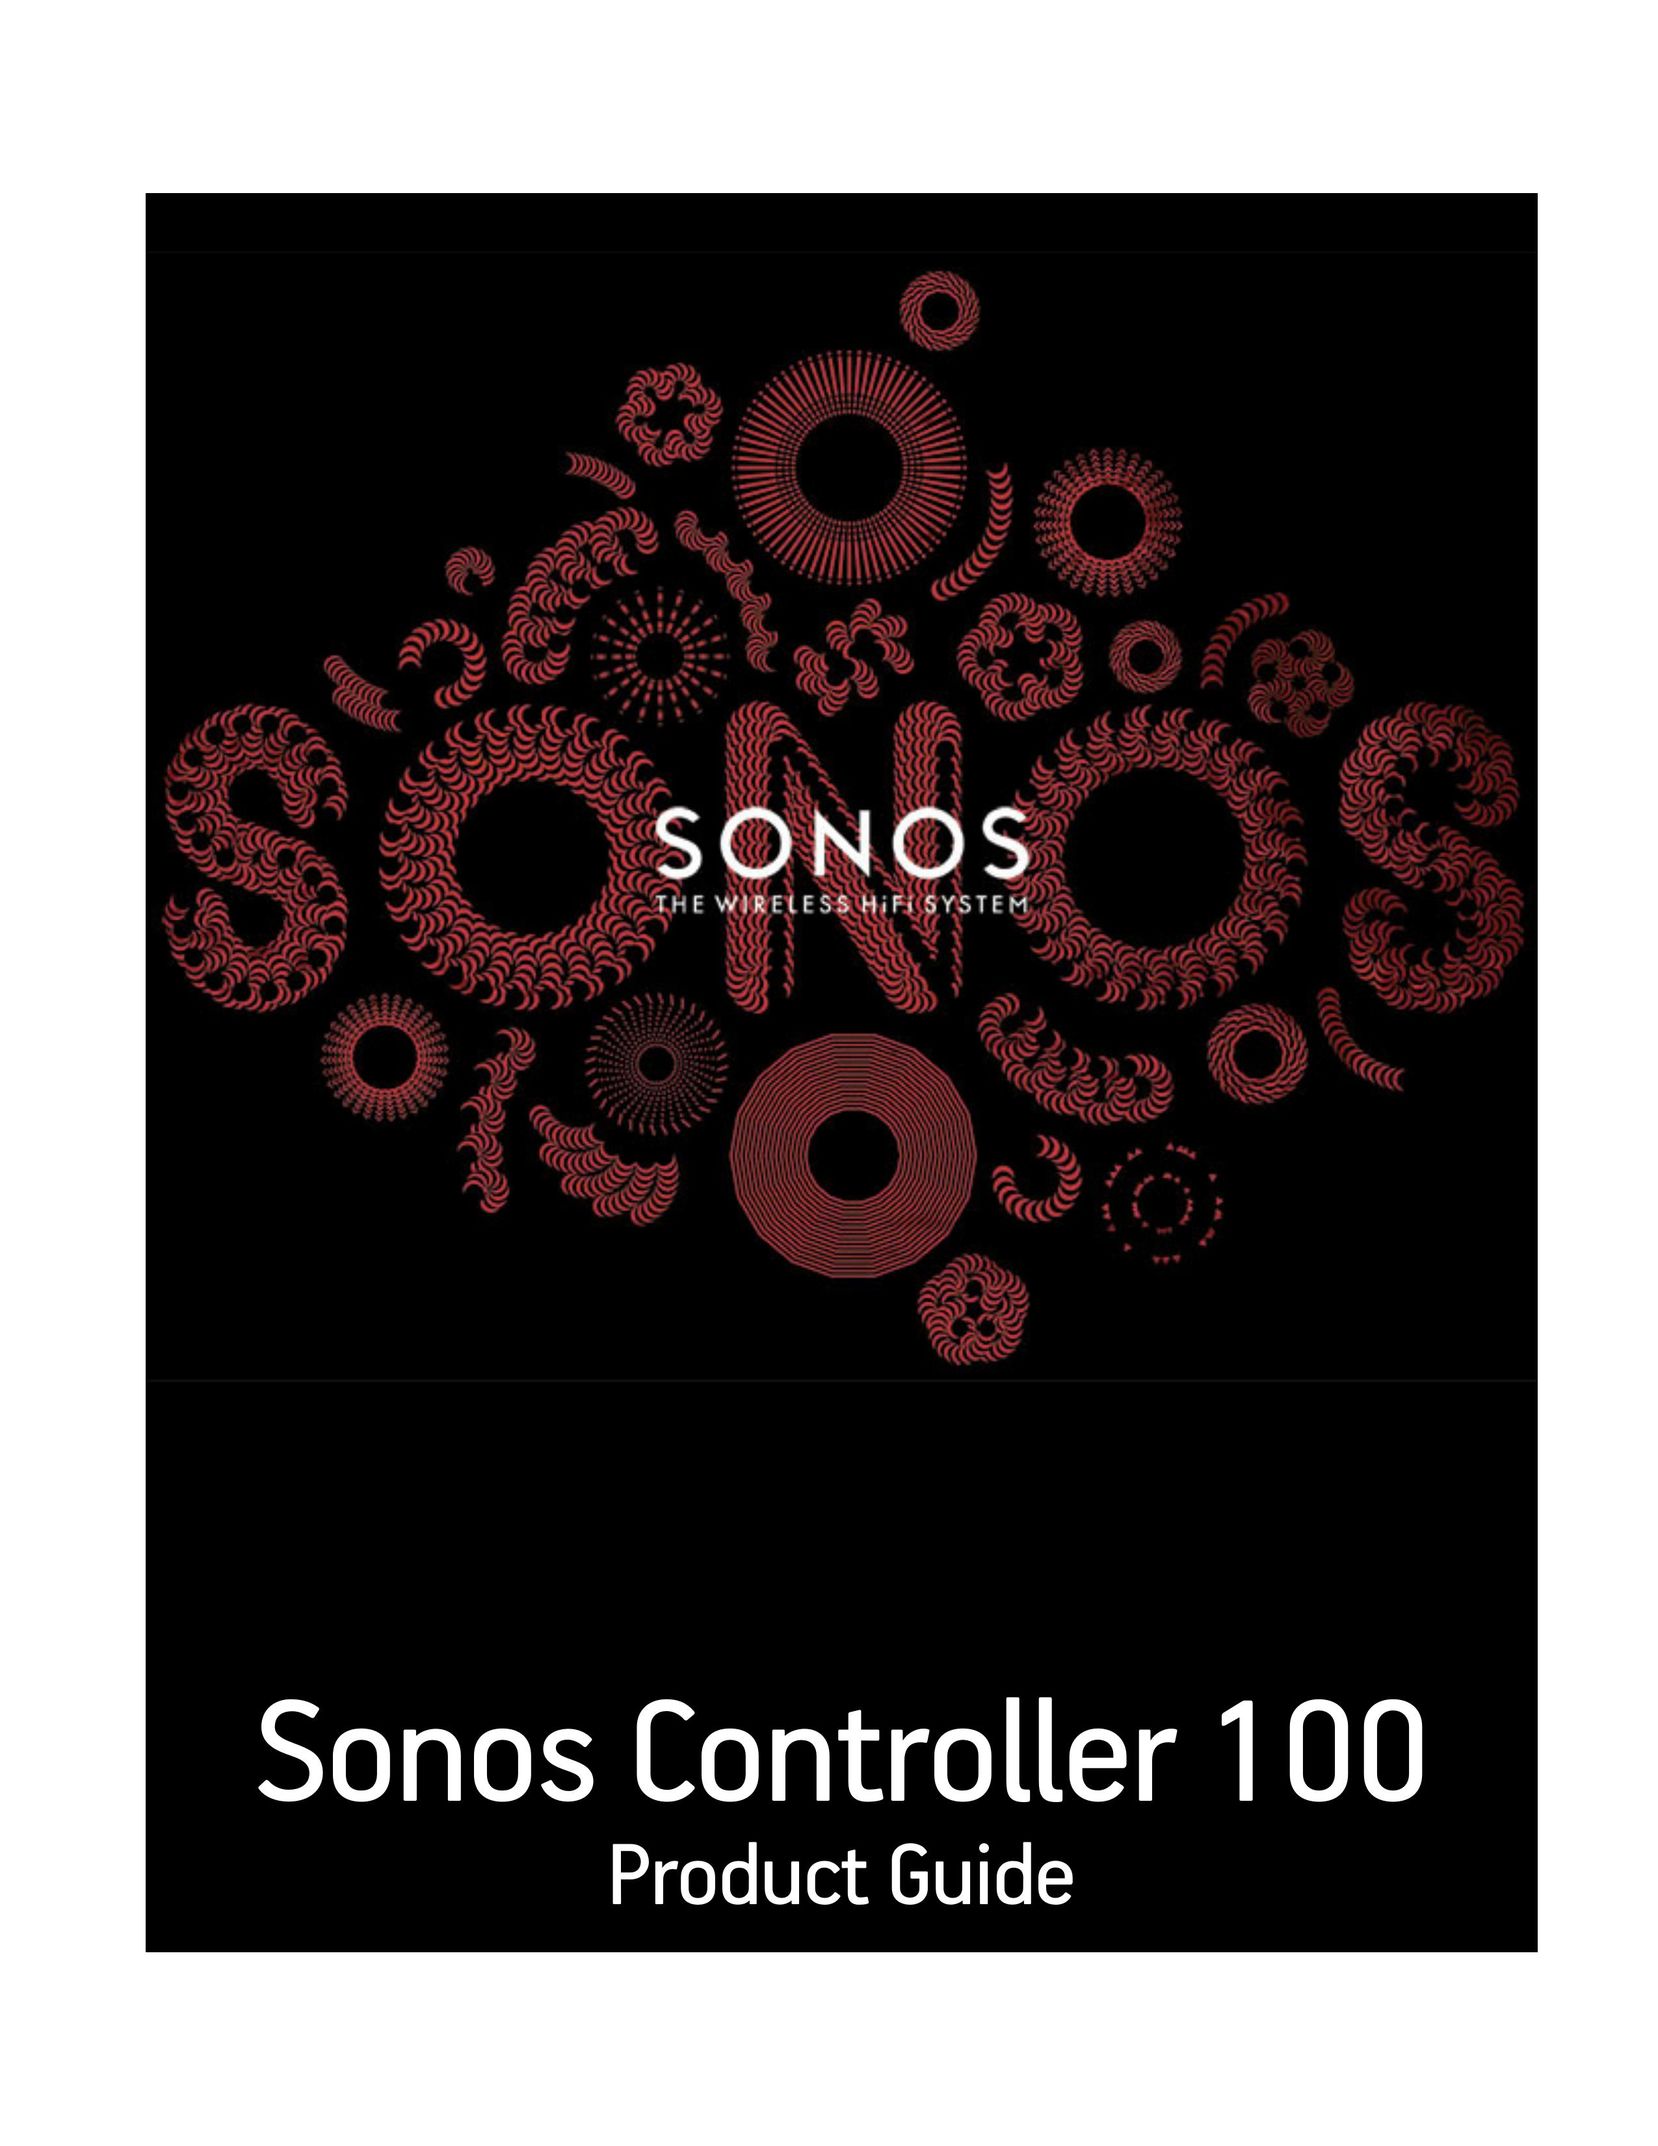 Sonos Sonos Controller 100 Video Game Controller User Manual